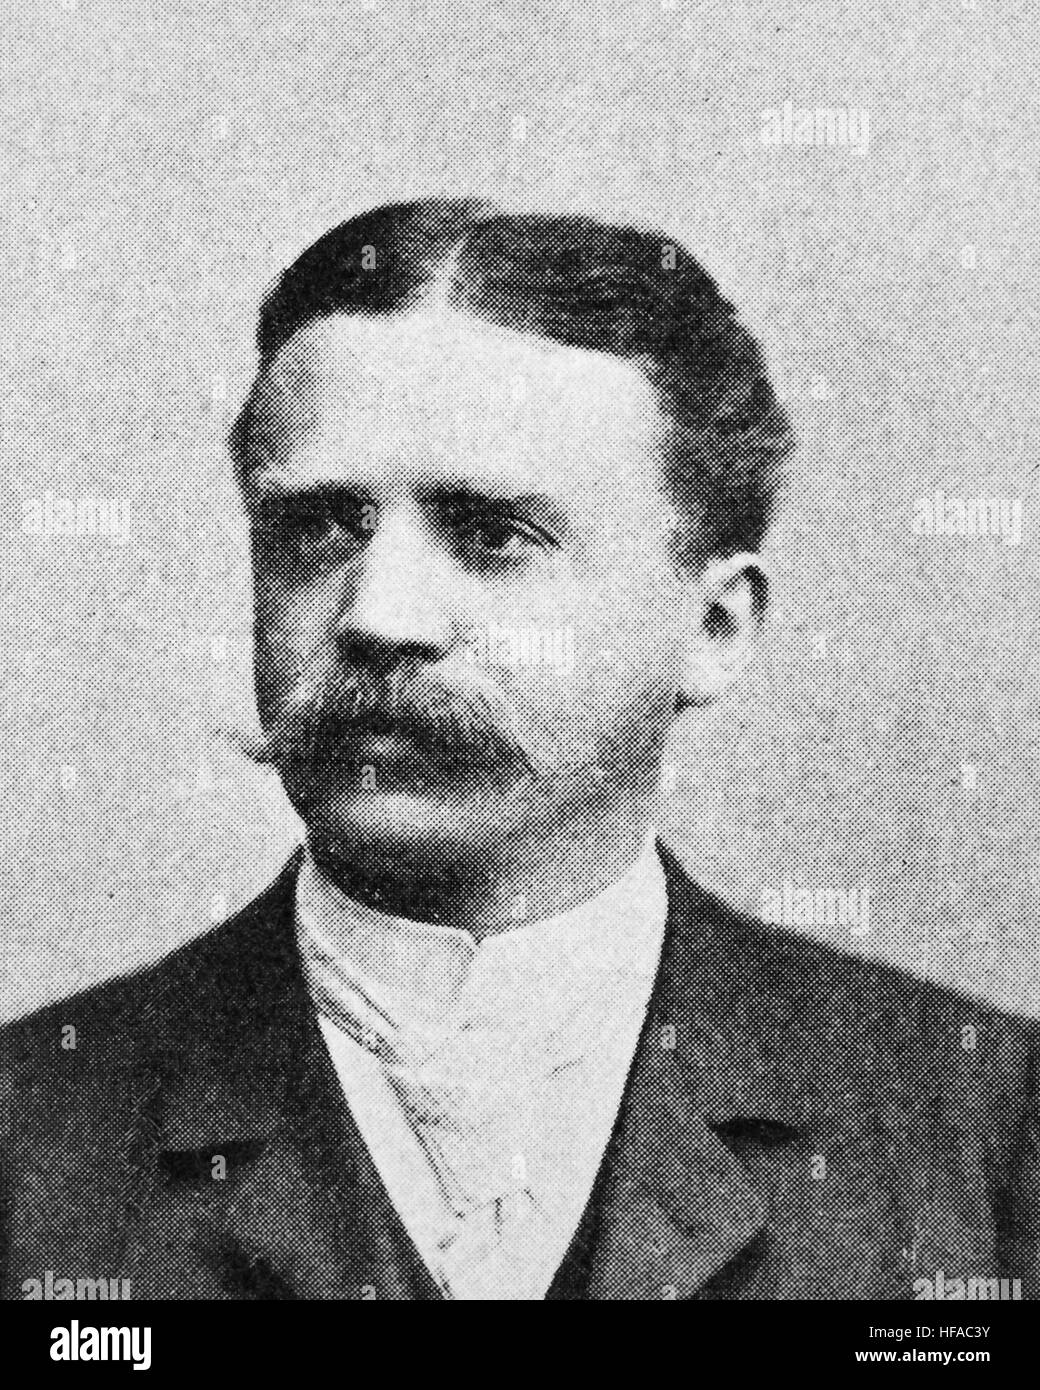 Alfred Biese, 1856-1930, ein deutscher Literaturhistoriker, Reproduktion Foto aus dem Jahr 1895, digital verbessert Stockfoto